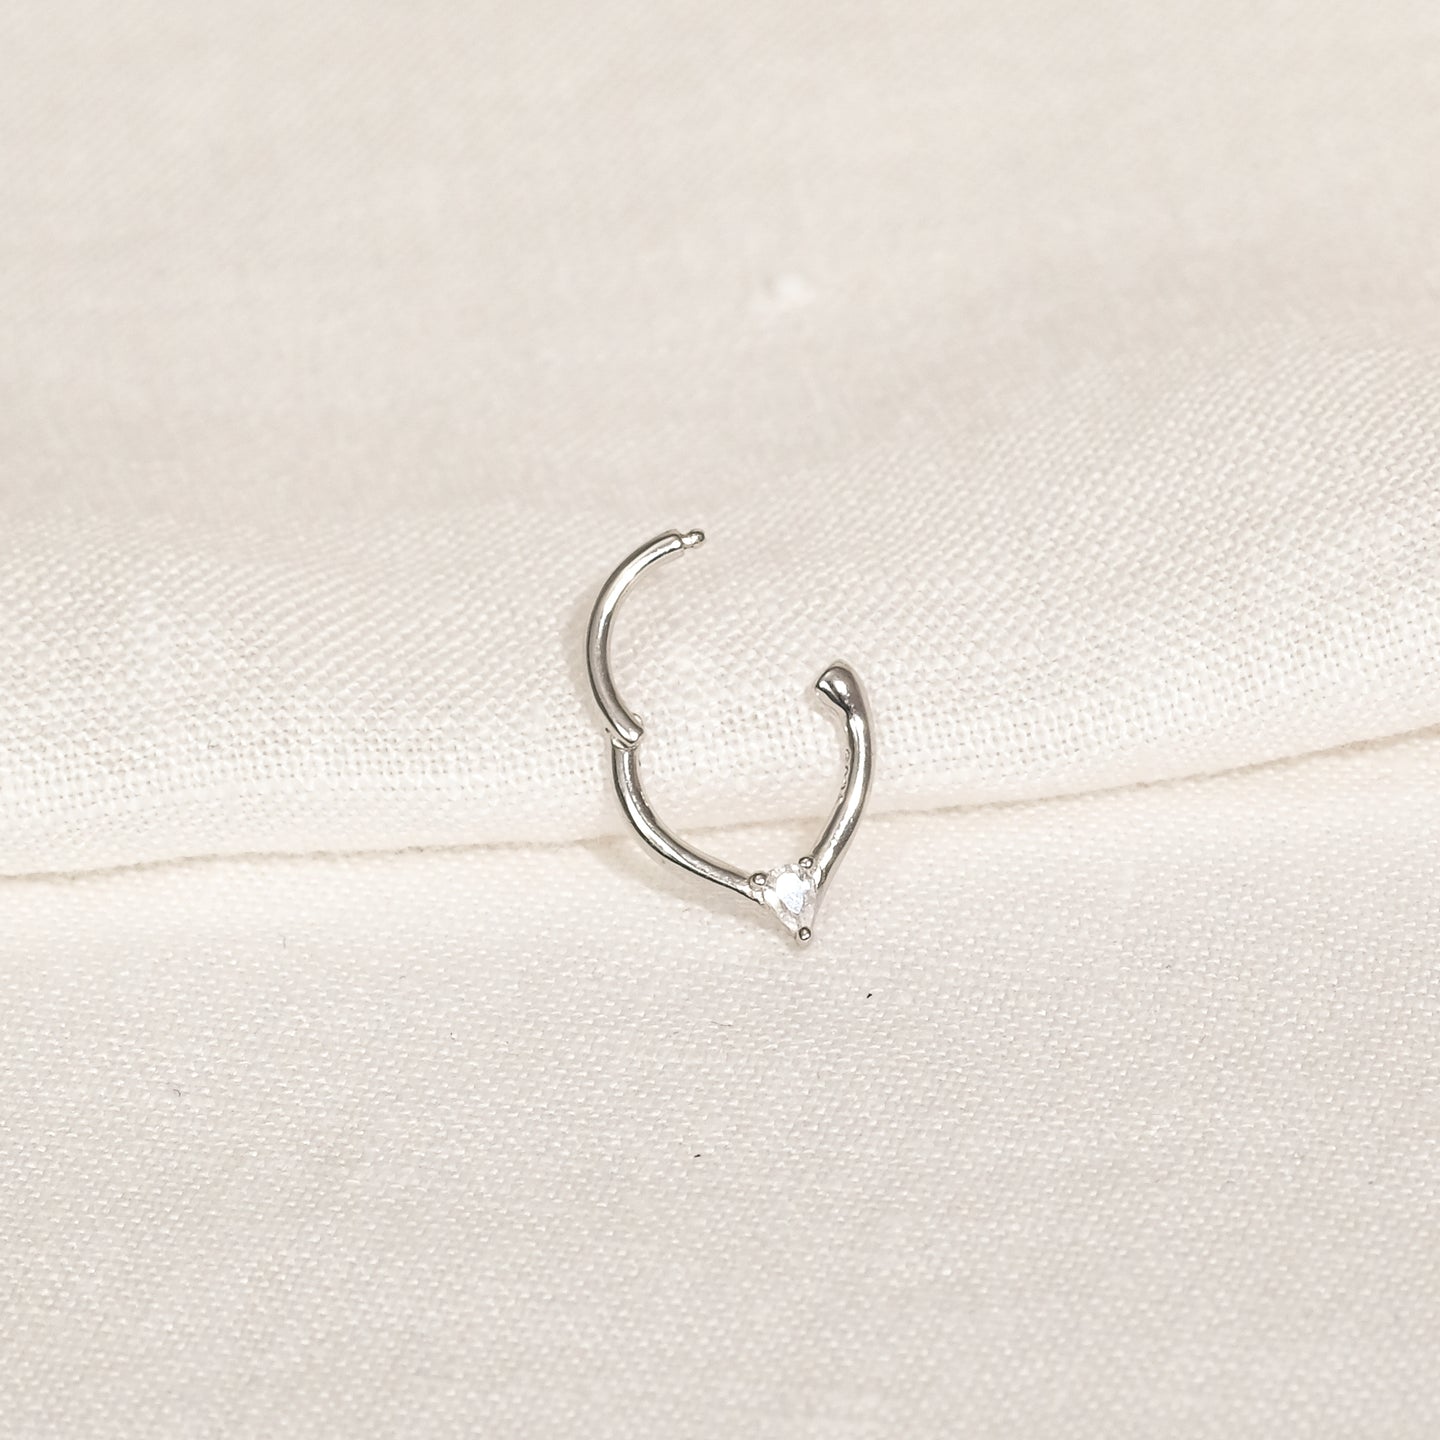 products/uni-cz-piercing-earrings-925-sterling-silver-2.jpg